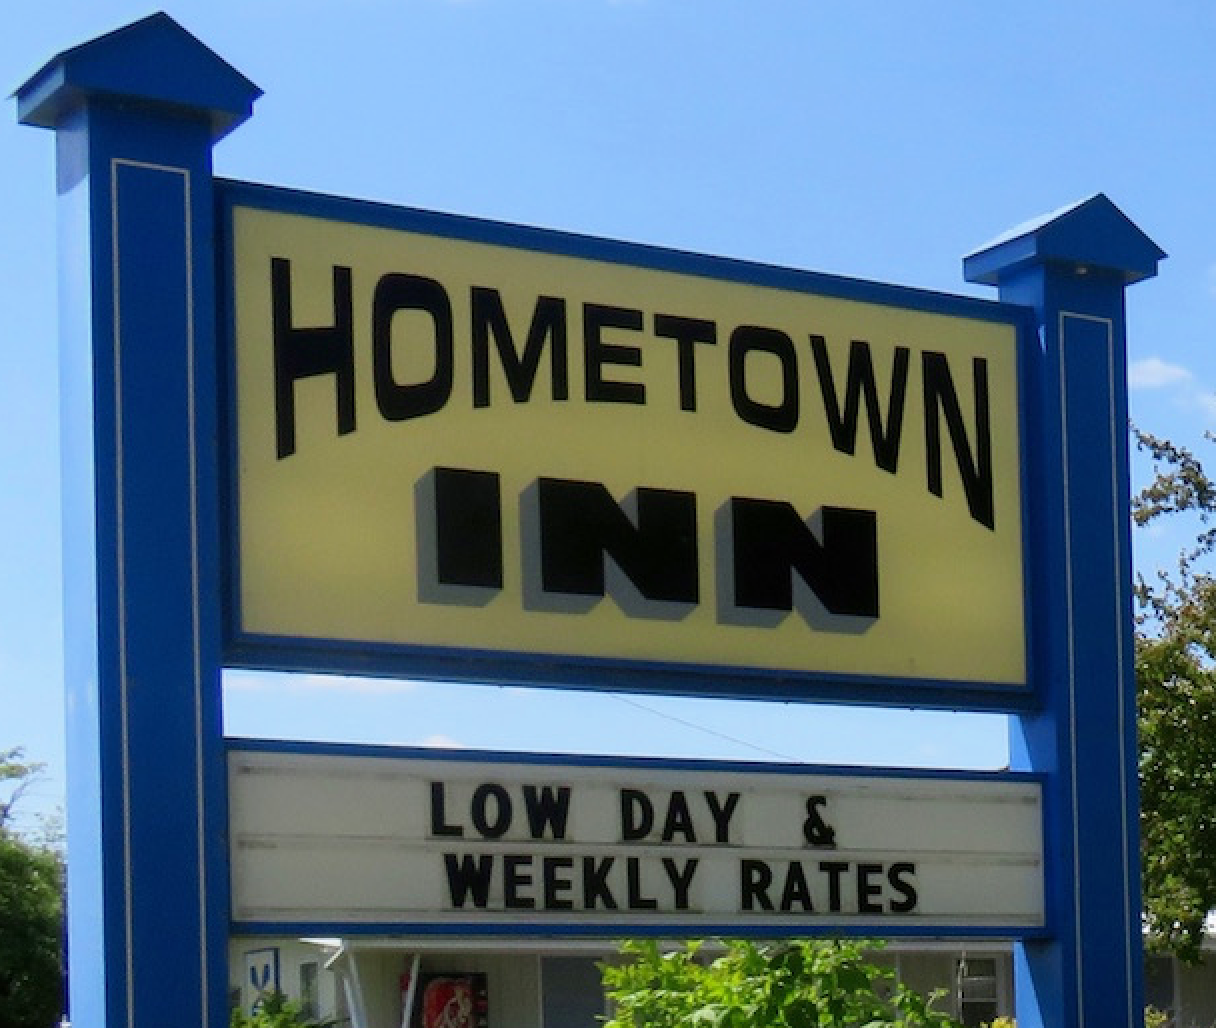 Hometown Inn – Seyahatiniz için en iyisini seçmenize yardımcı olacak seyahat yorumları, restoranlar ve oteller hakkında bilgi sayfası